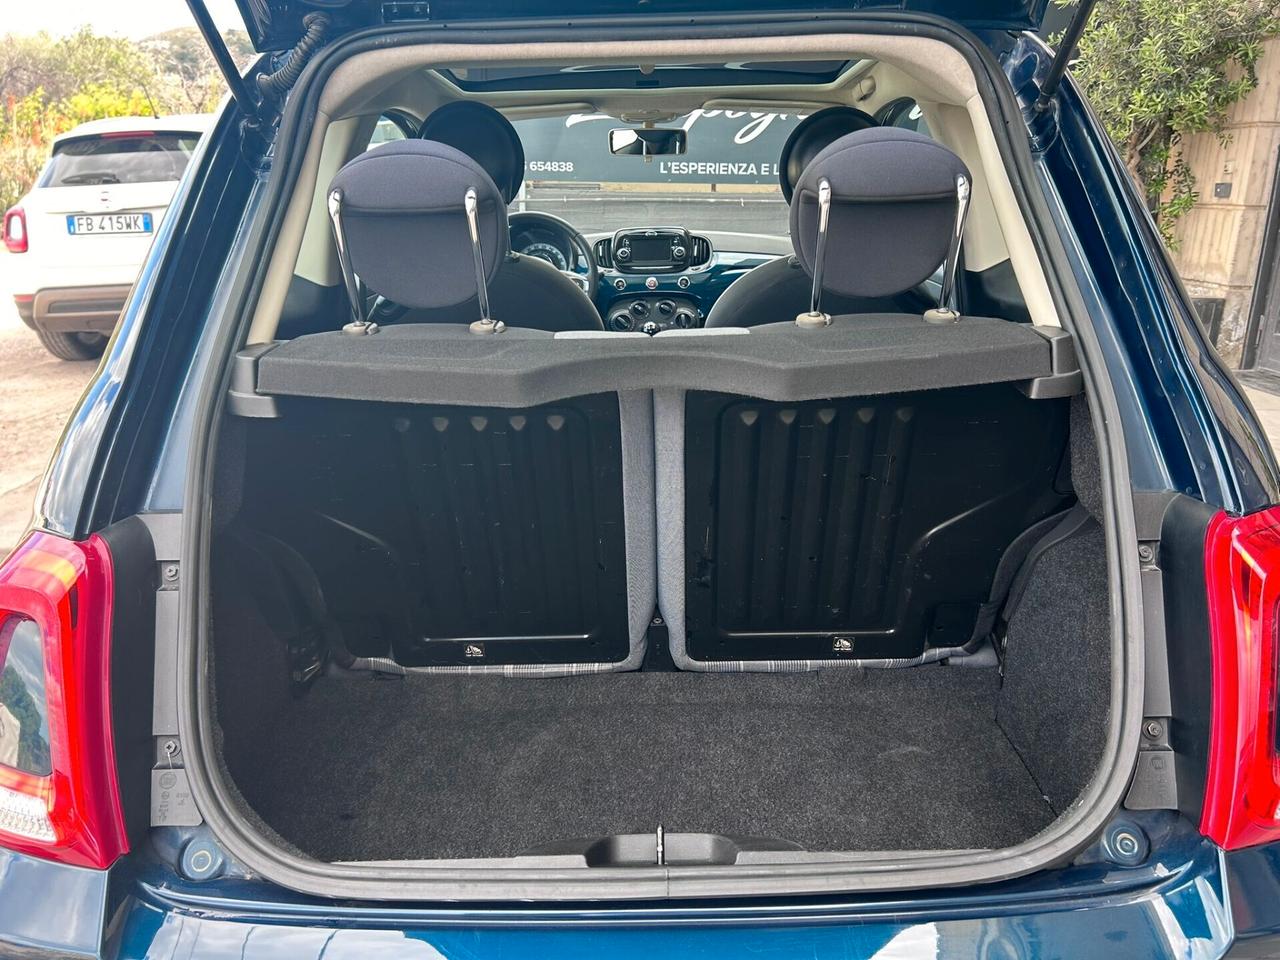 Fiat 500 1.2 Lounge 69cv - 2018 Neopatentati